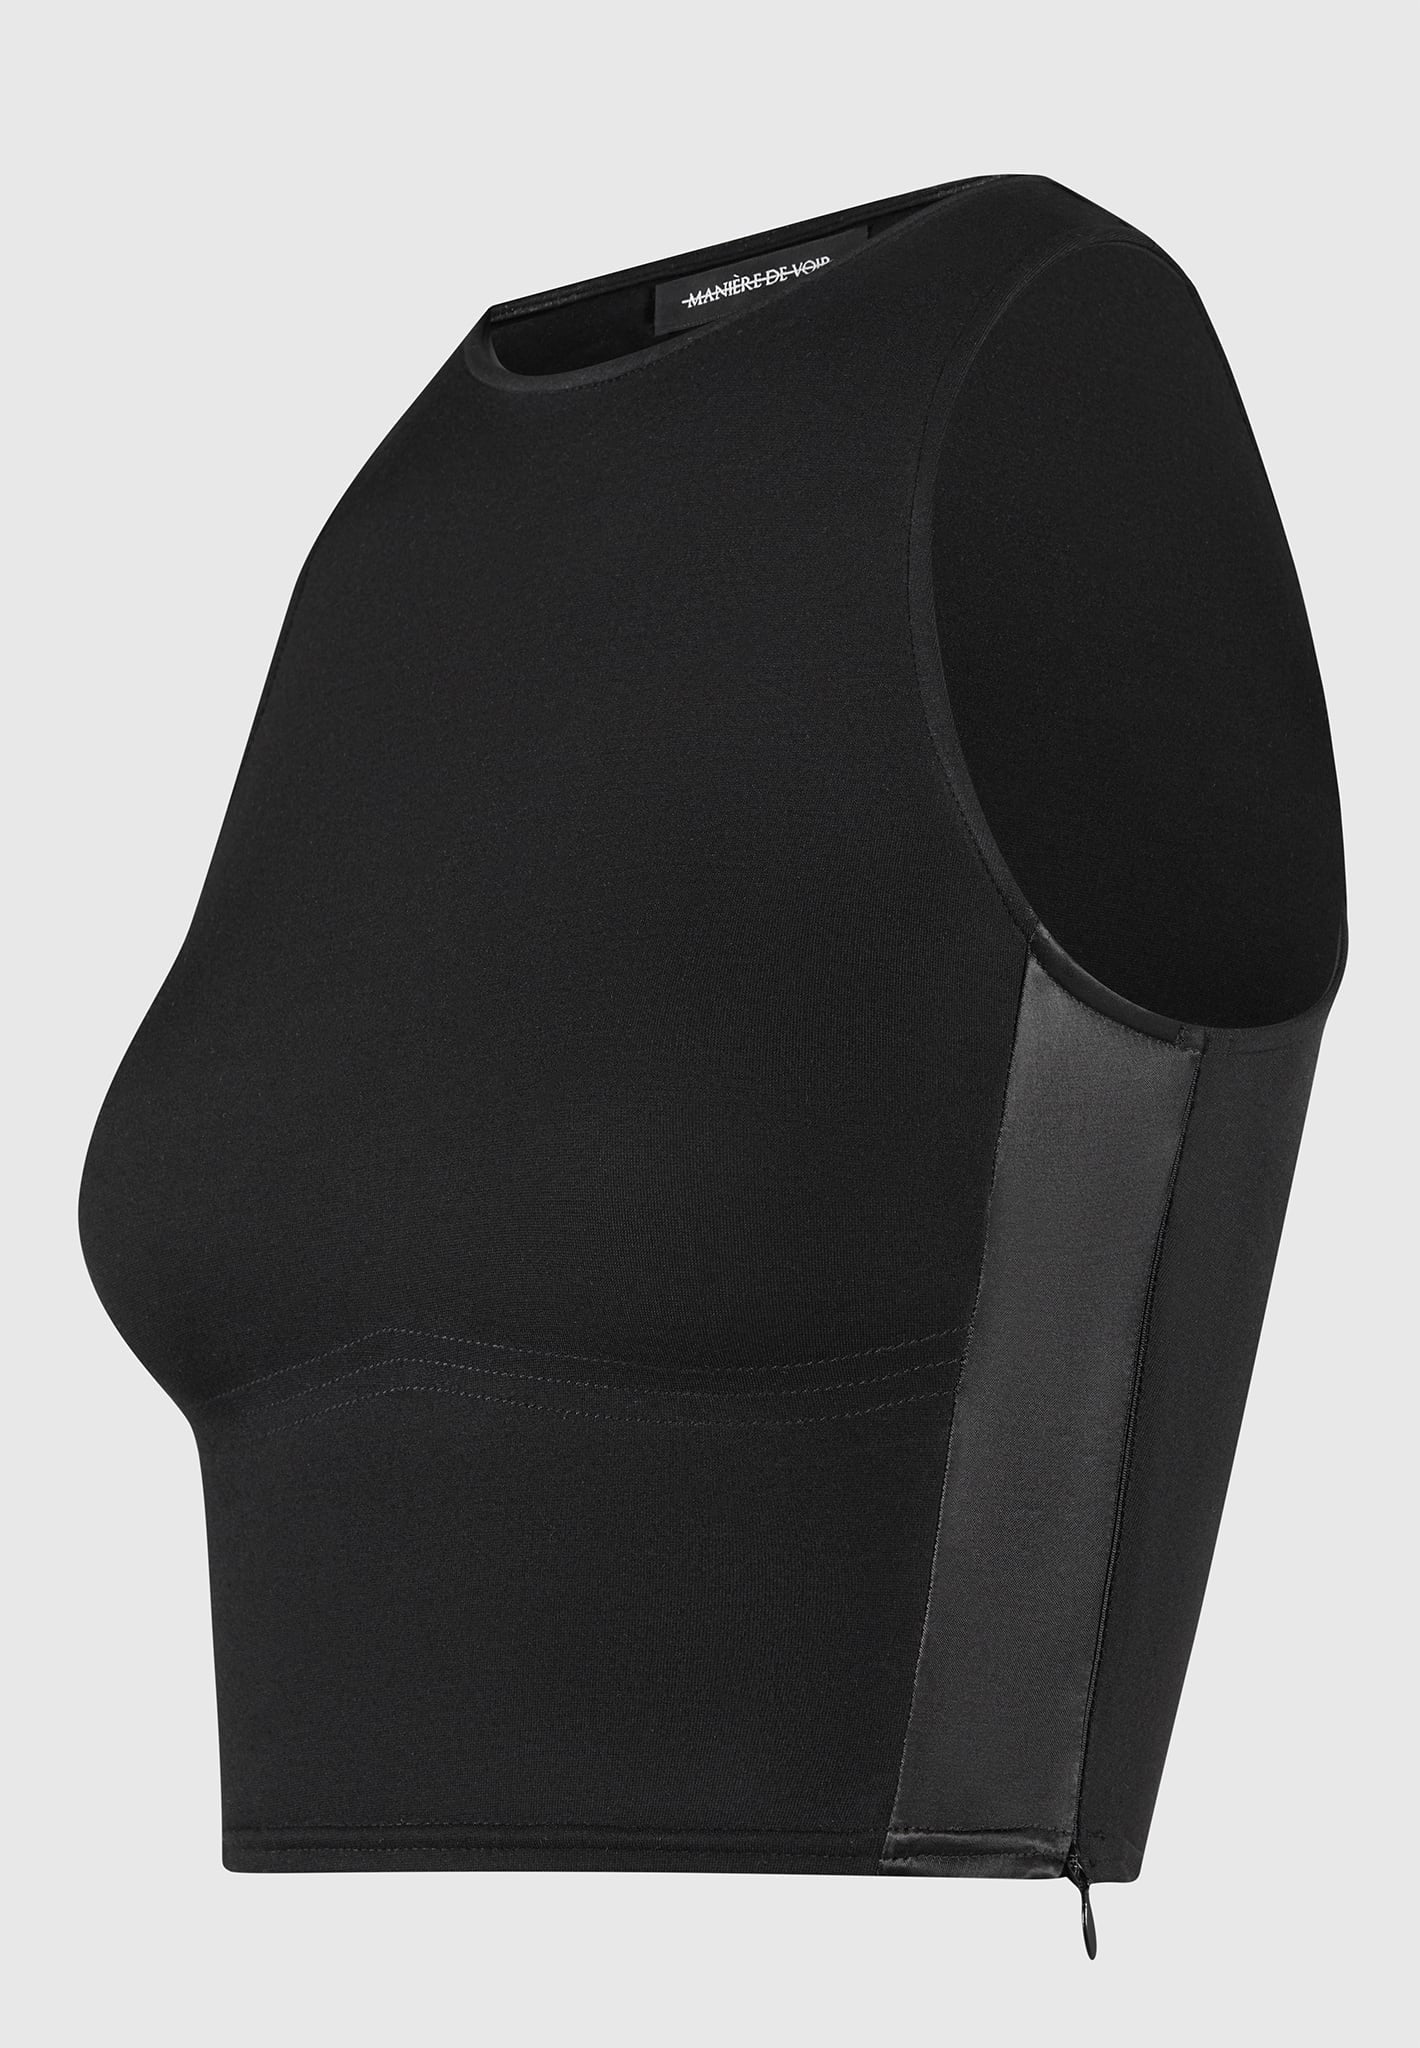 Buy THE BLAZZE 1302 Women's Cotton Scoop Neck Half Sleeve Tank Crop Tops  Bustier Bra Vest Crop Top Bralette Readymade S Online - Get 50% Off